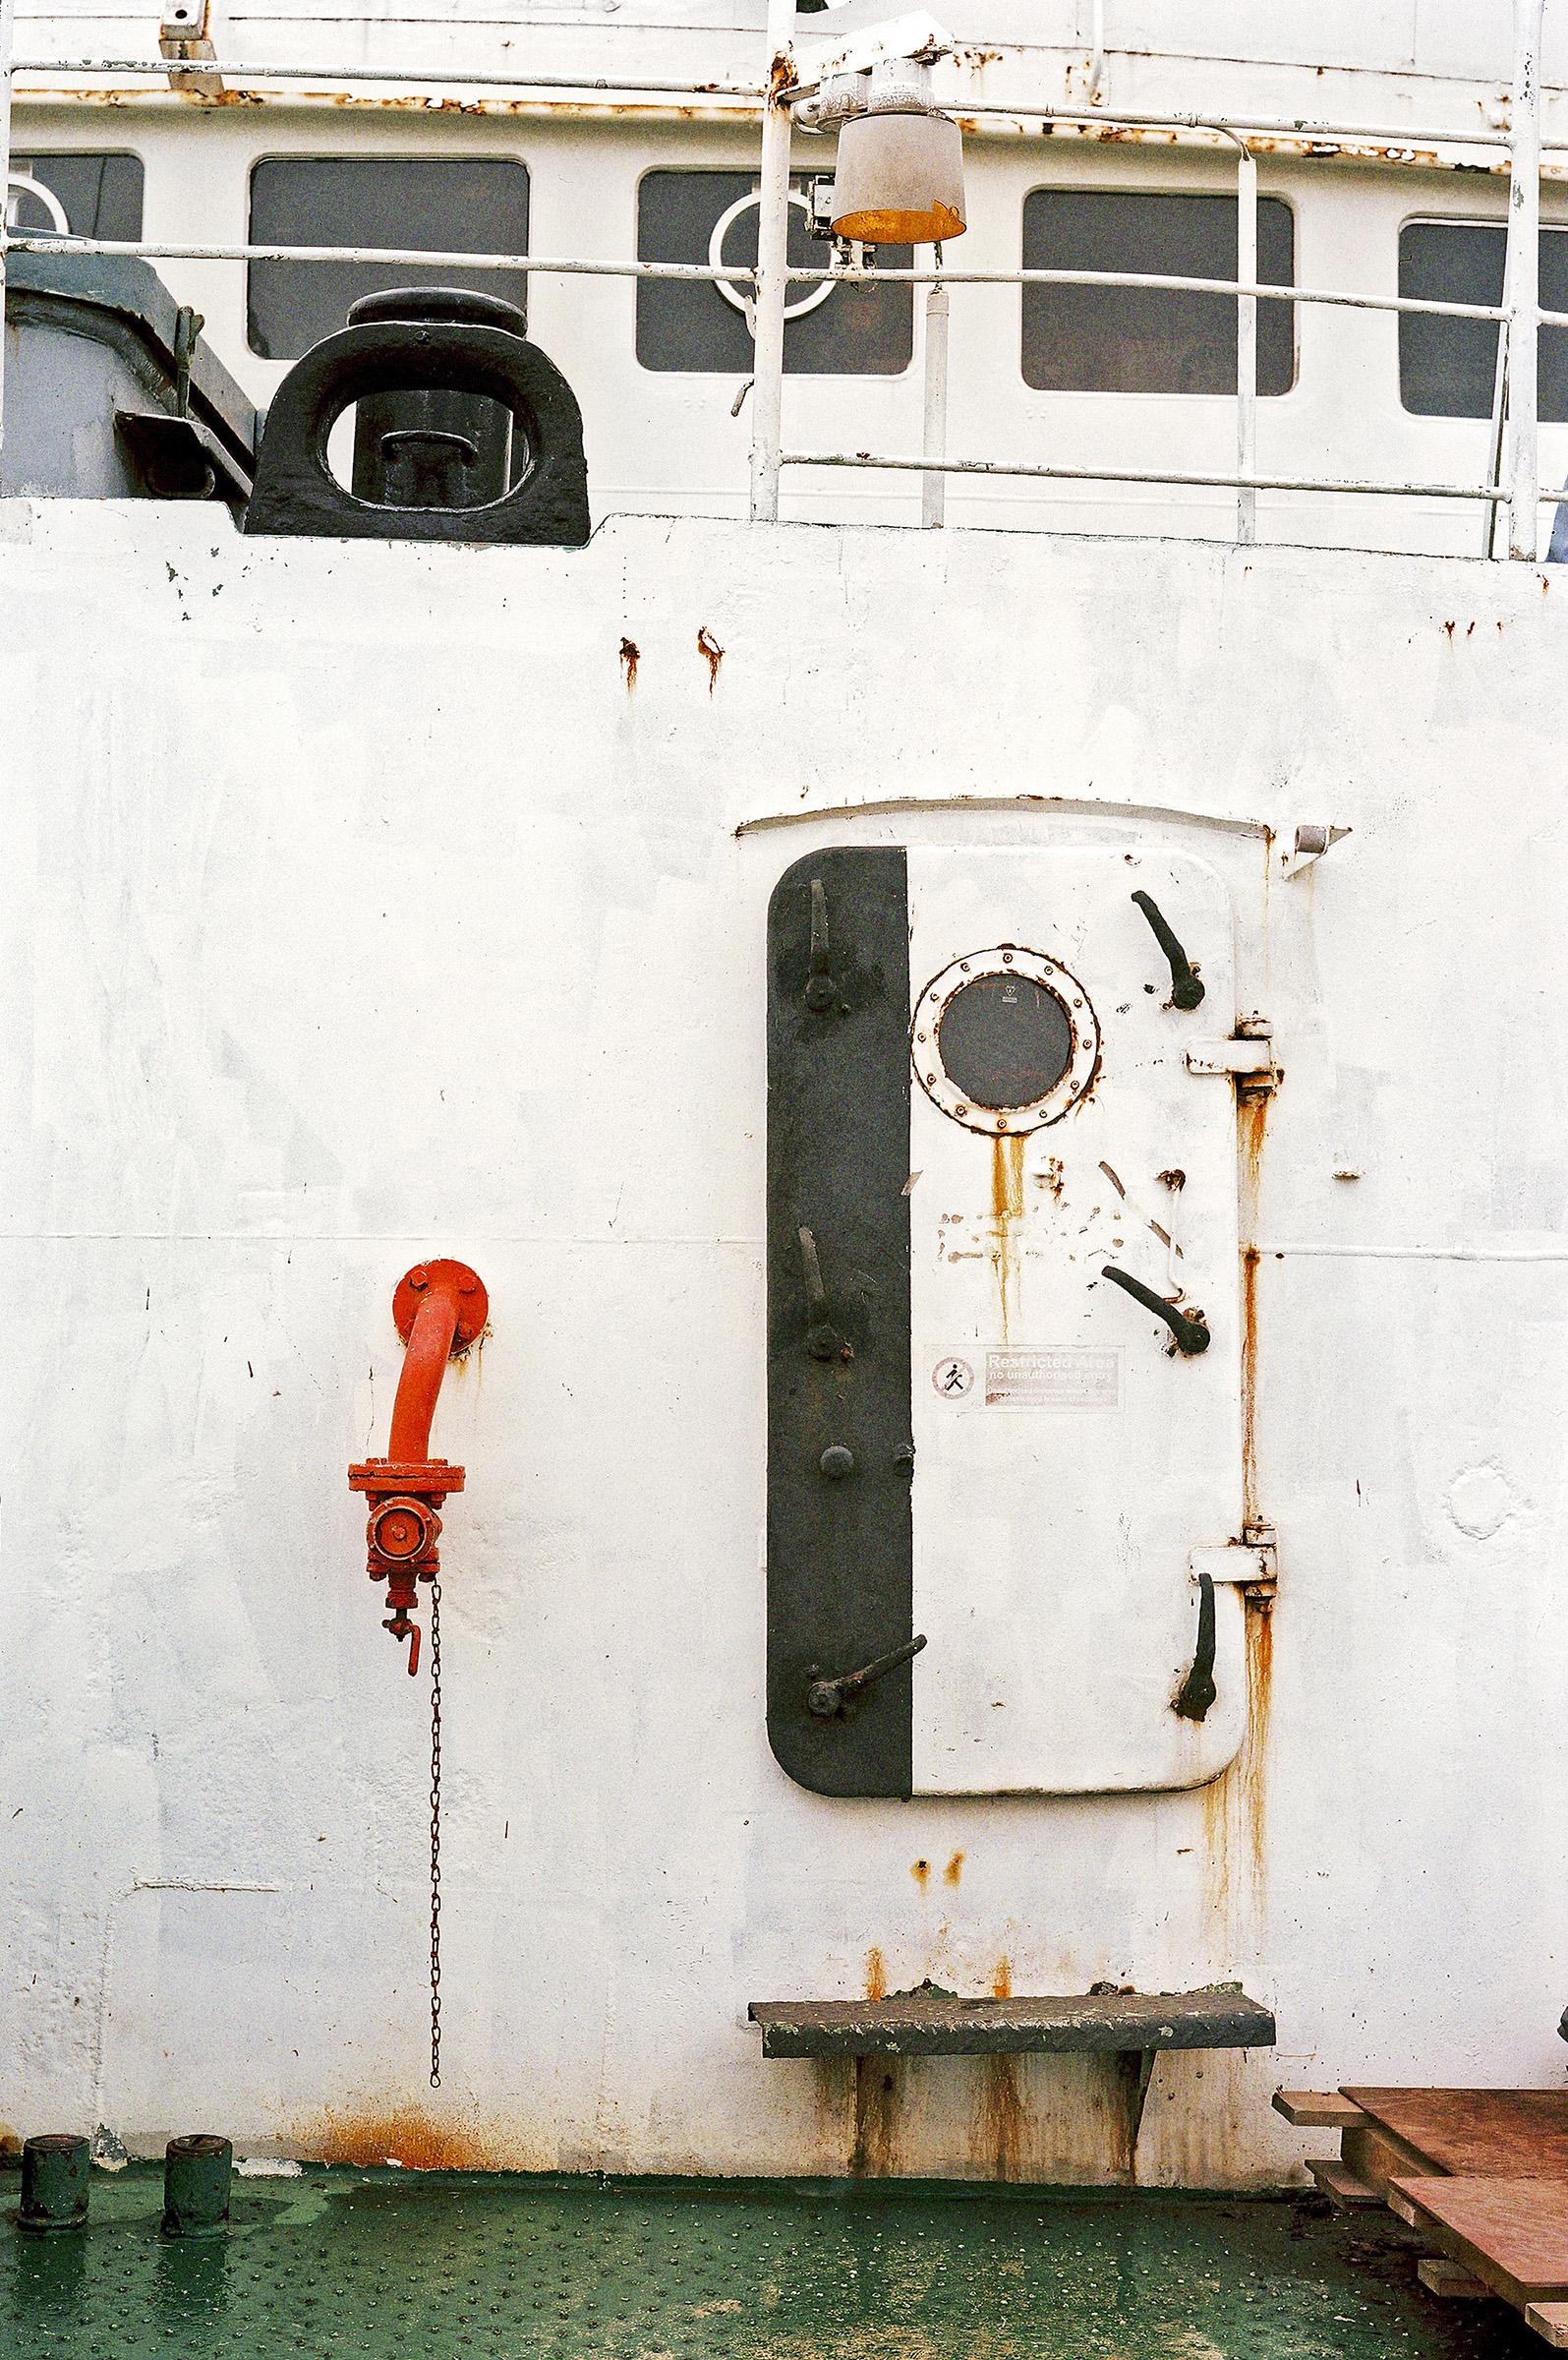 Schwarz-weißer Schott (Schiffstür) auf dem Brückendeck mit einigen Rostflecken. An der weißen Wand daneben befindet sich ein rot lackiertes Rohr.